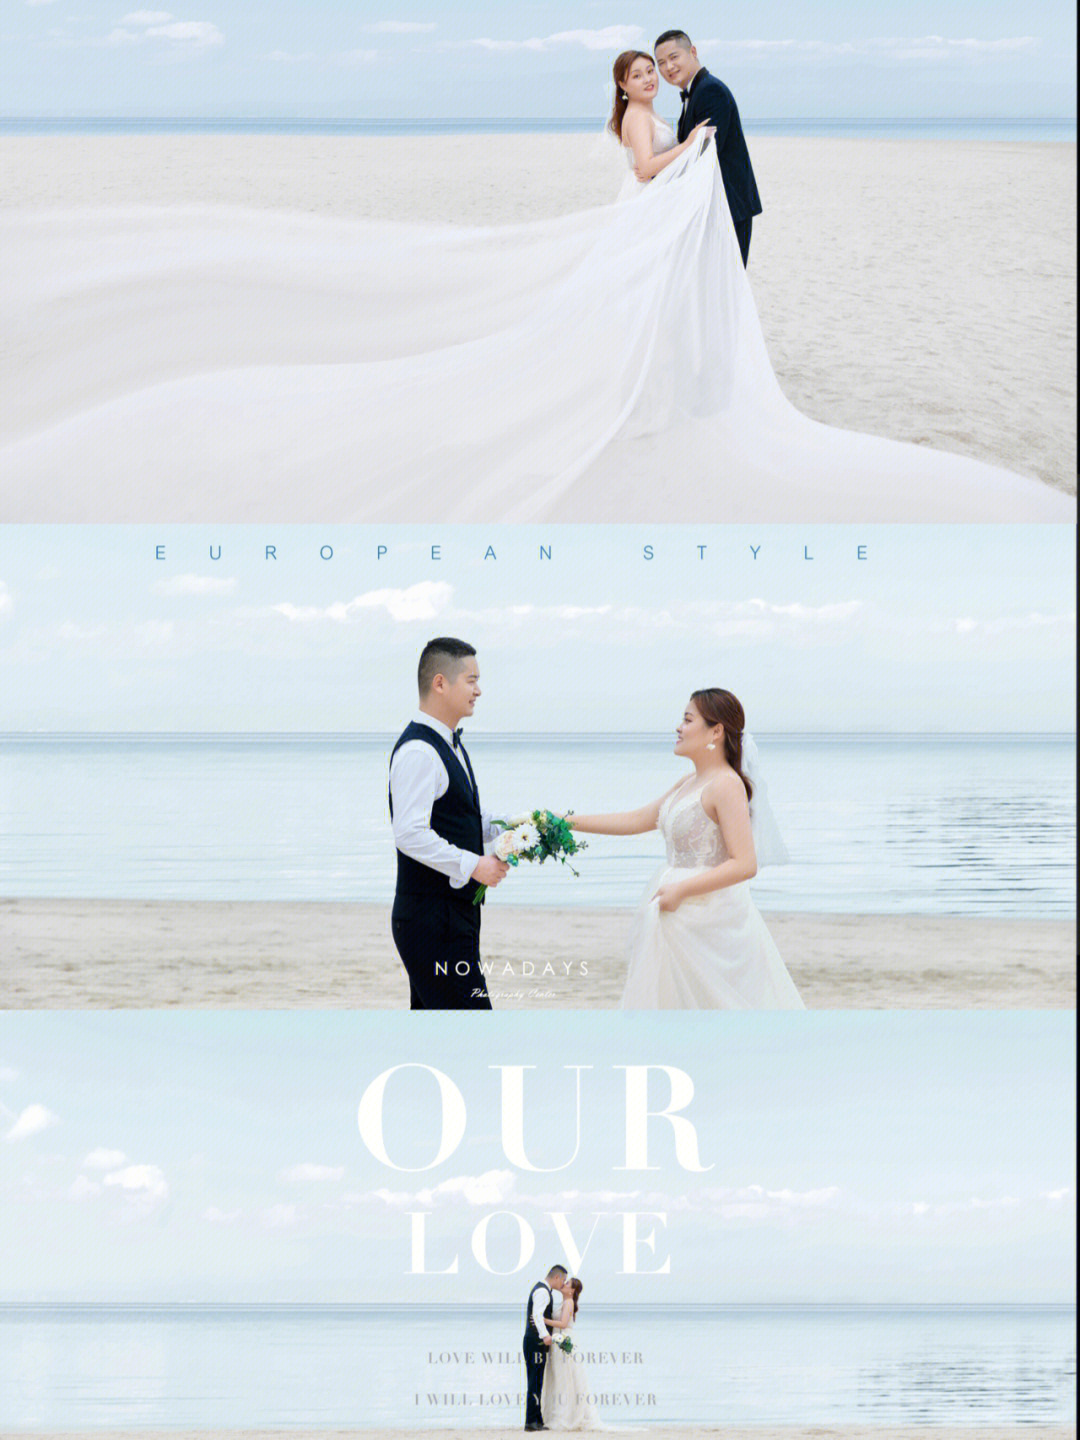 珠海海景婚纱照摄影工作室客片分享